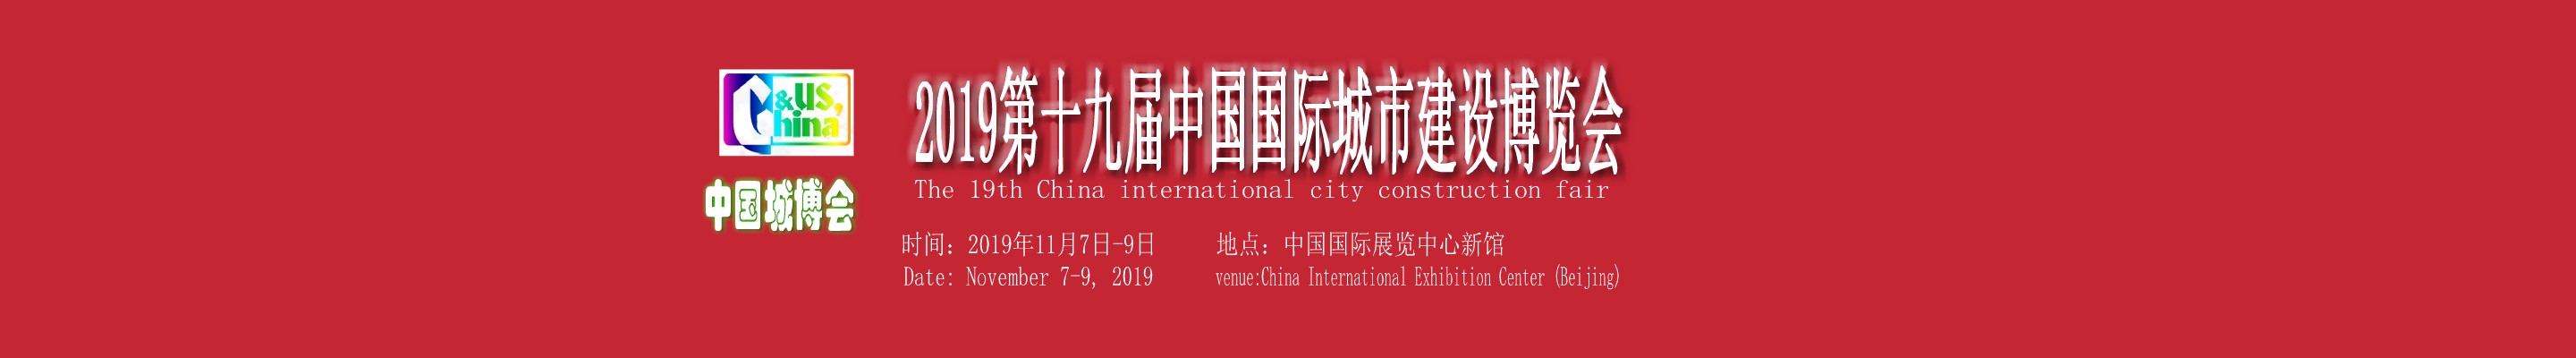 2021北京城市建设博览会中国城博会